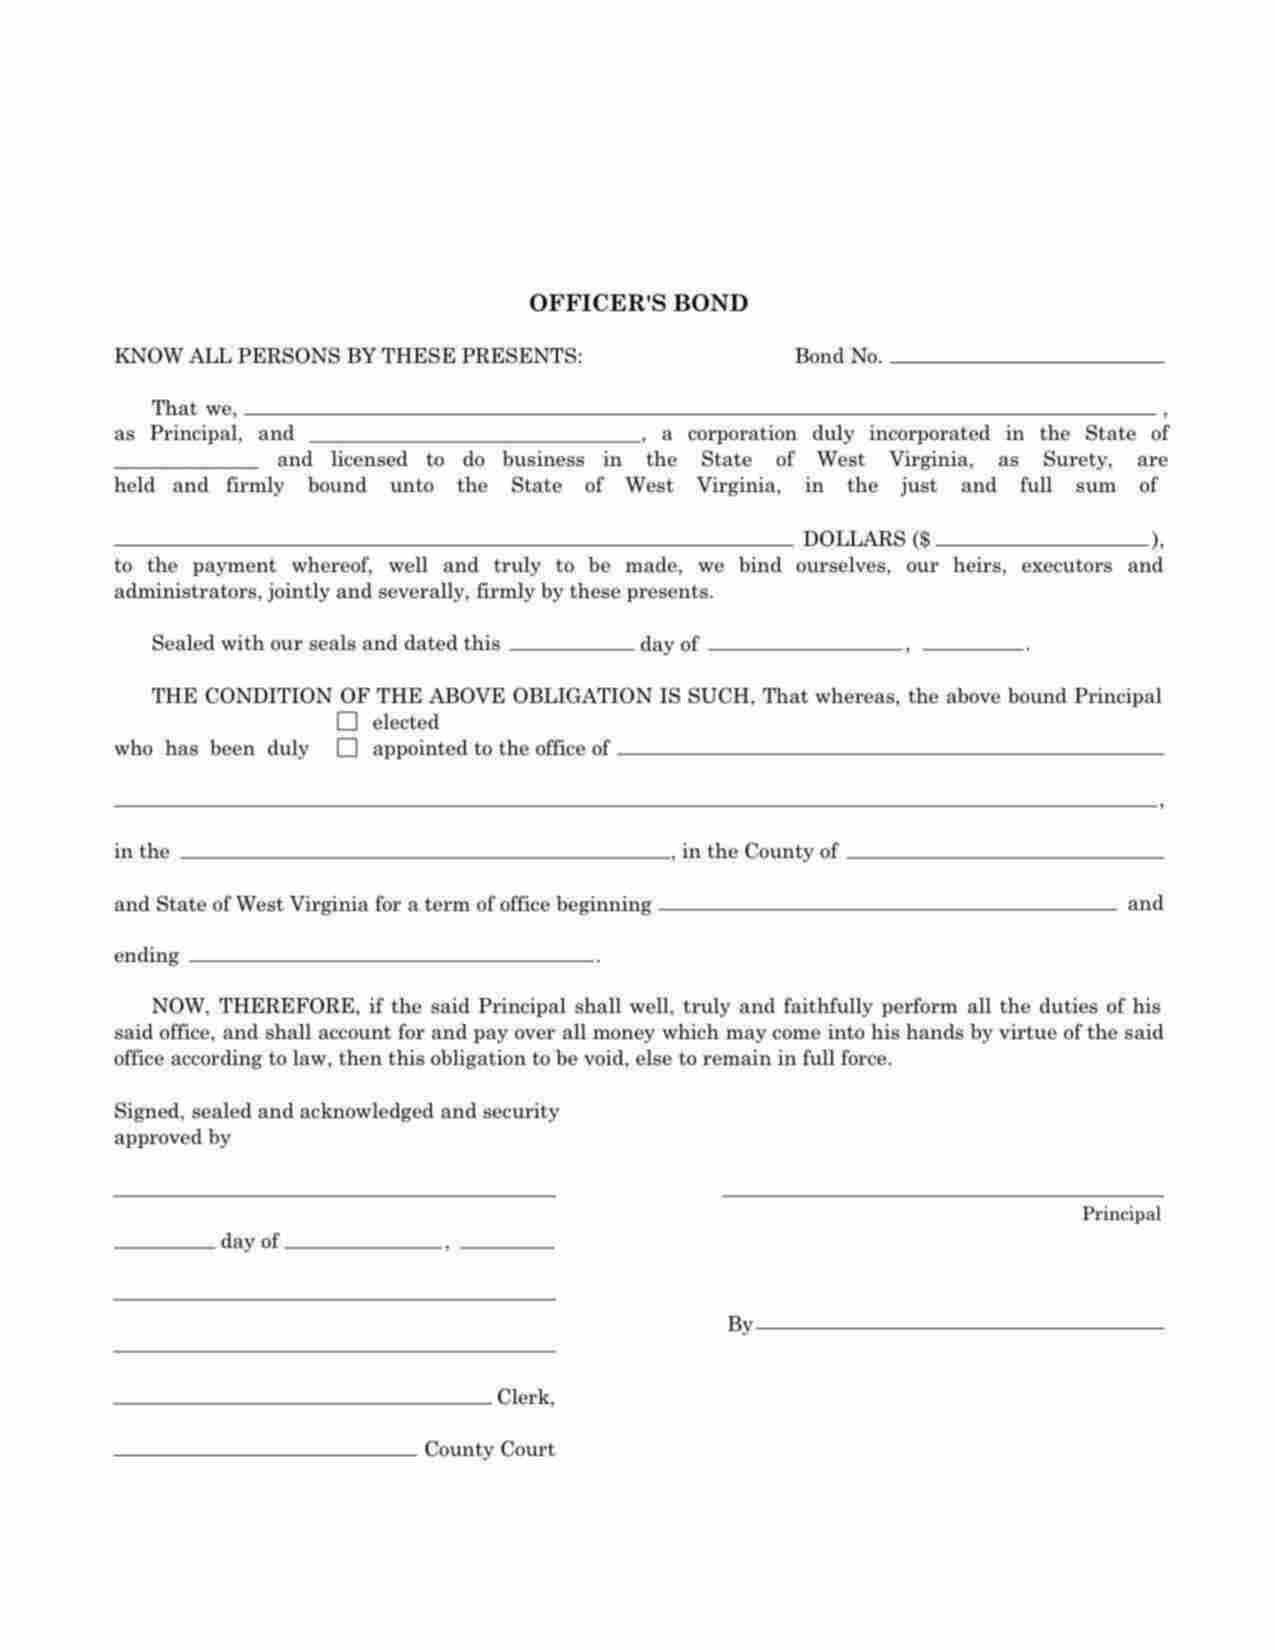 West Virginia Public Official Bond Form